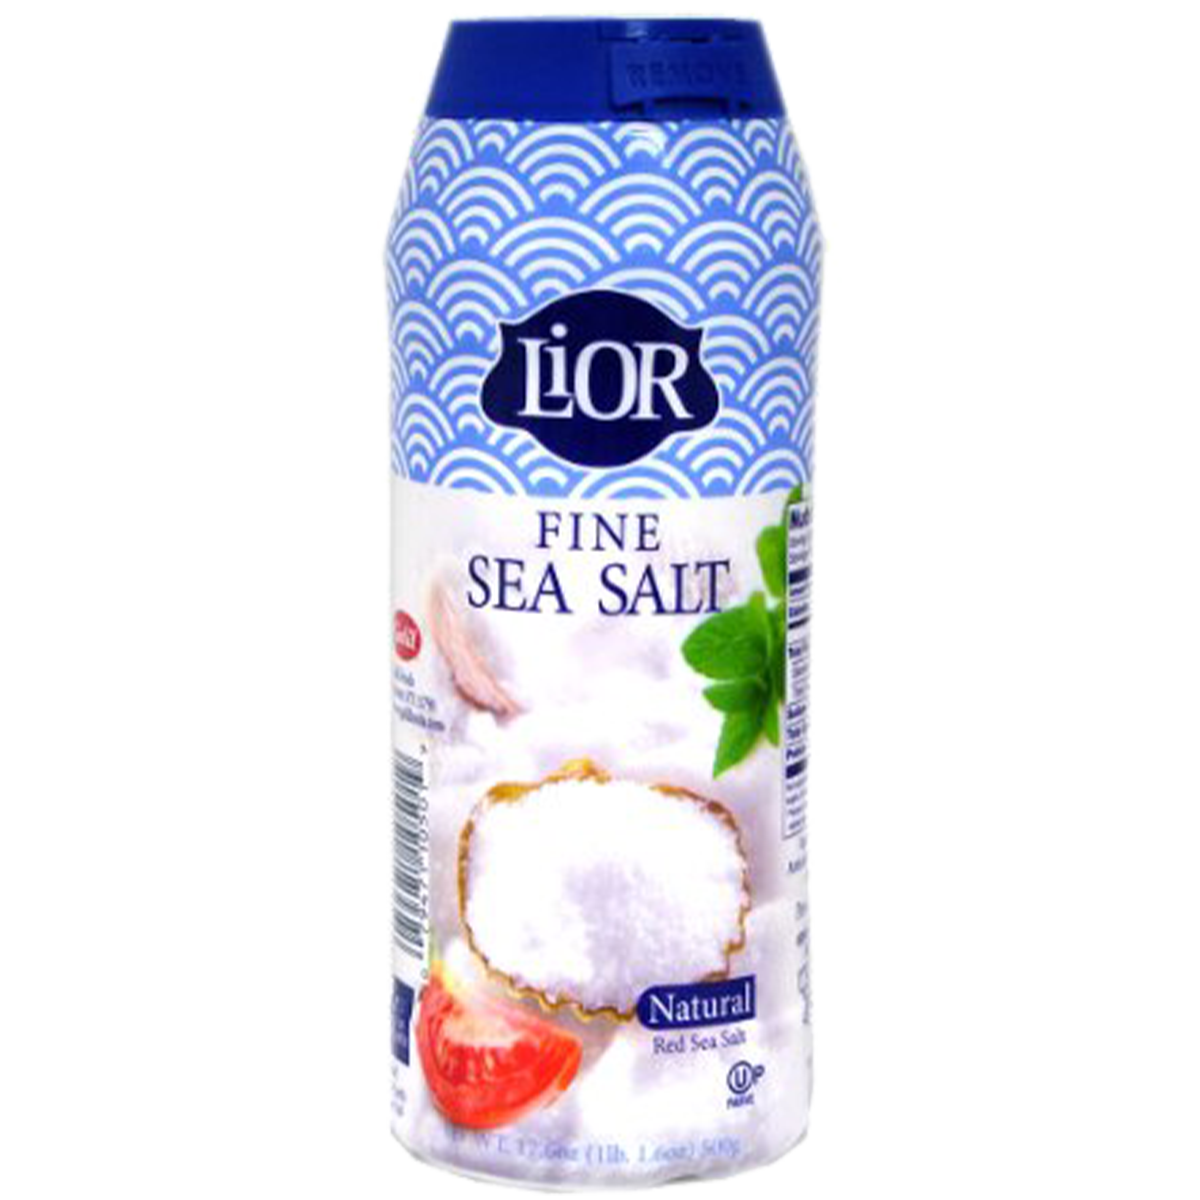 Fine Sea Salt | Table Shaker Lg  | 17.6 oz | LiOR